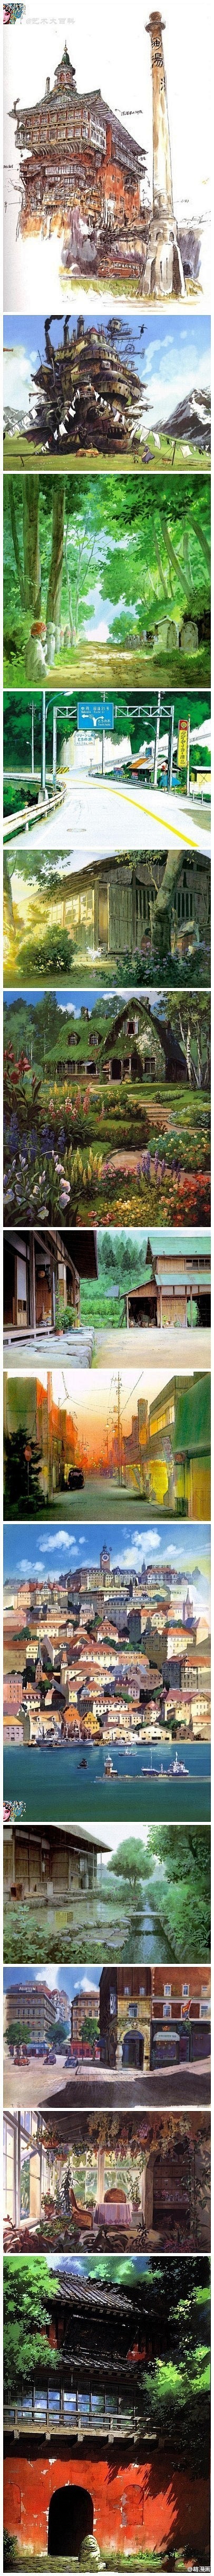 宫崎骏的动画世界，无法用语言来形容的美！